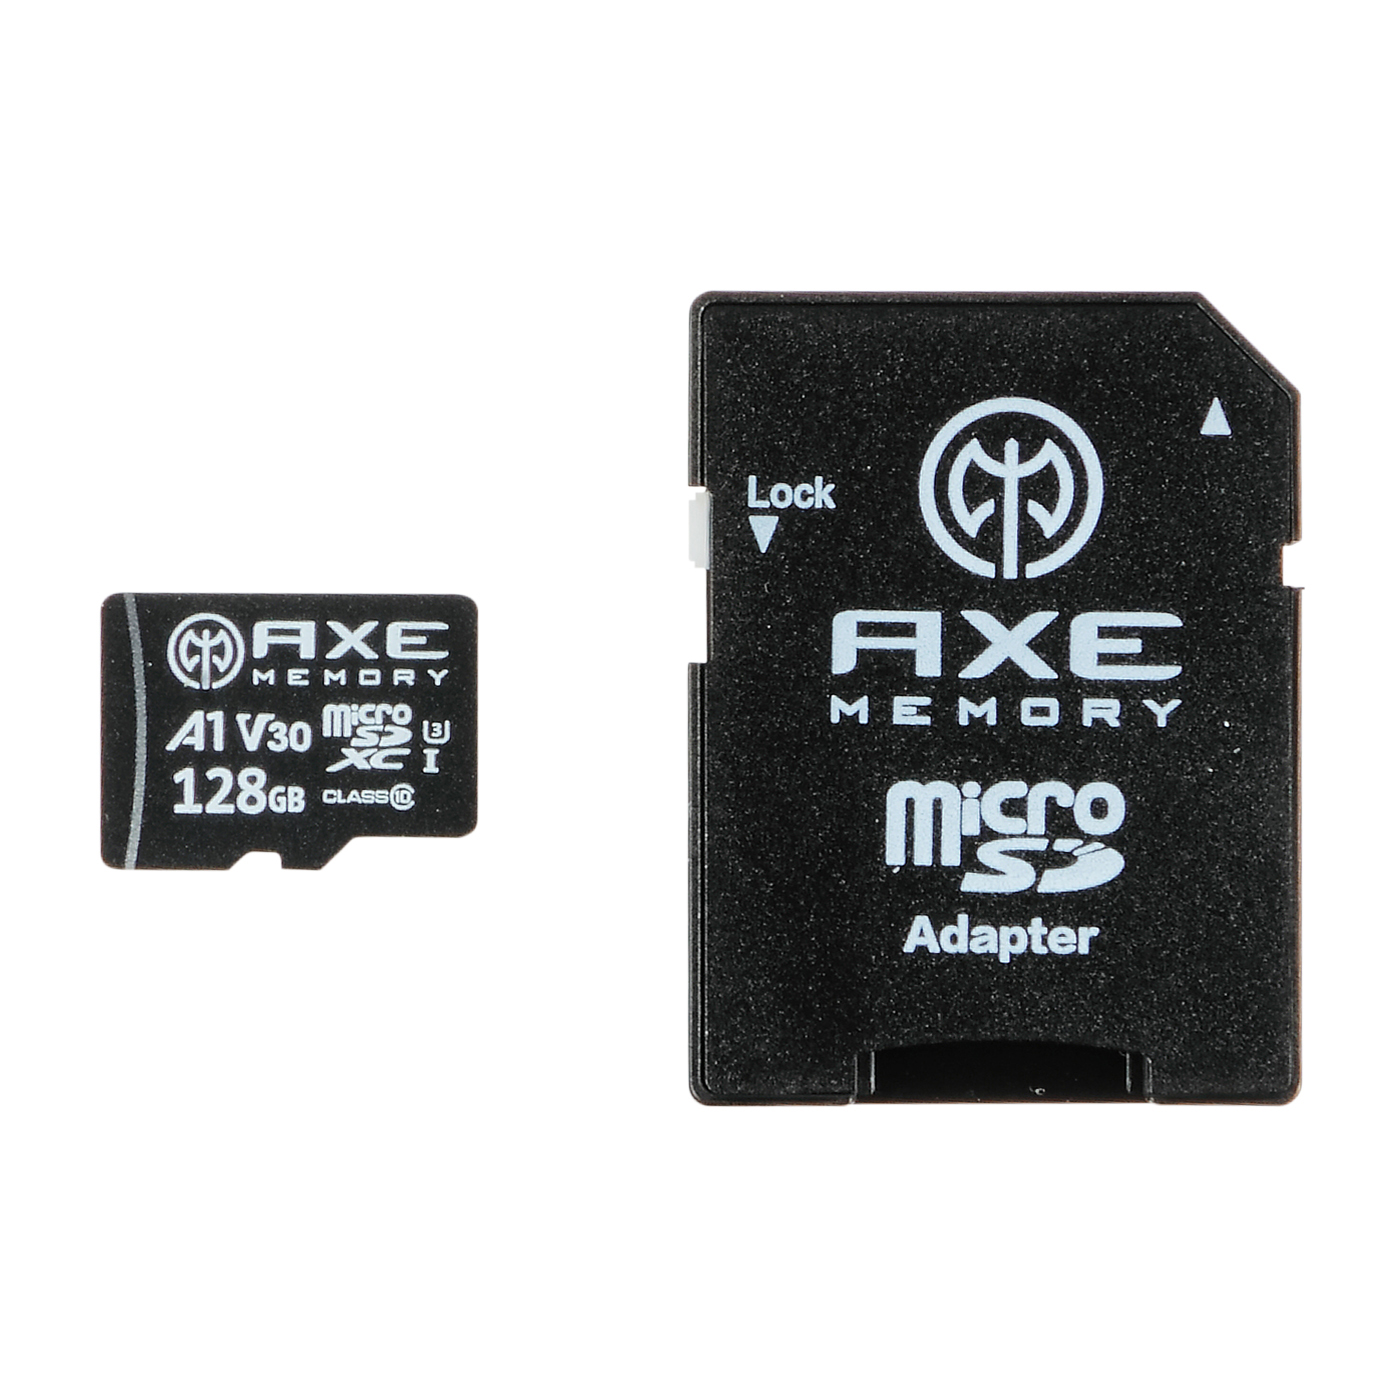 マイクロ SDカード 2枚セット 32GB MicroSD メモリーカード 高速 U3 Class10 メール便限定送料無料 MSD-32G-2set